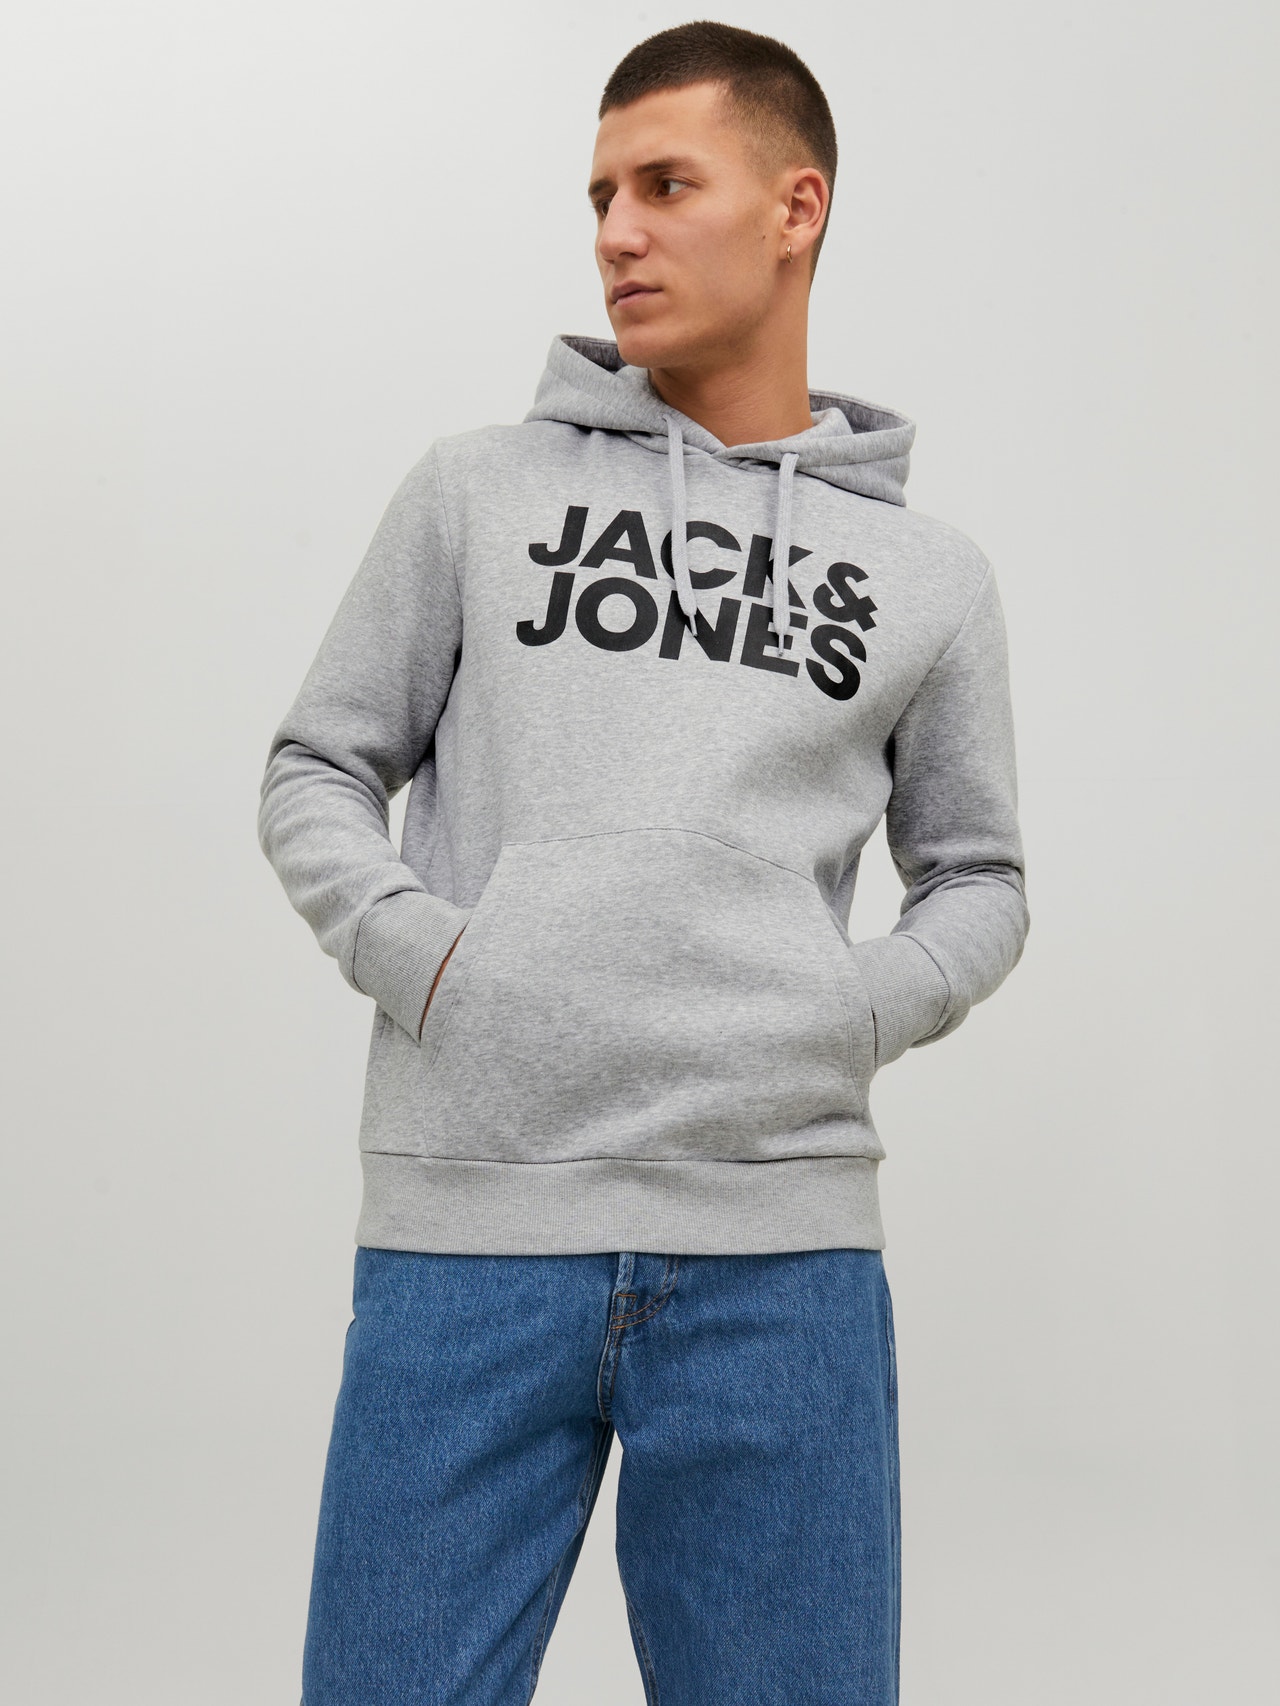 Jack & Jones Sweat à capuche - light grey melange/gris clair 